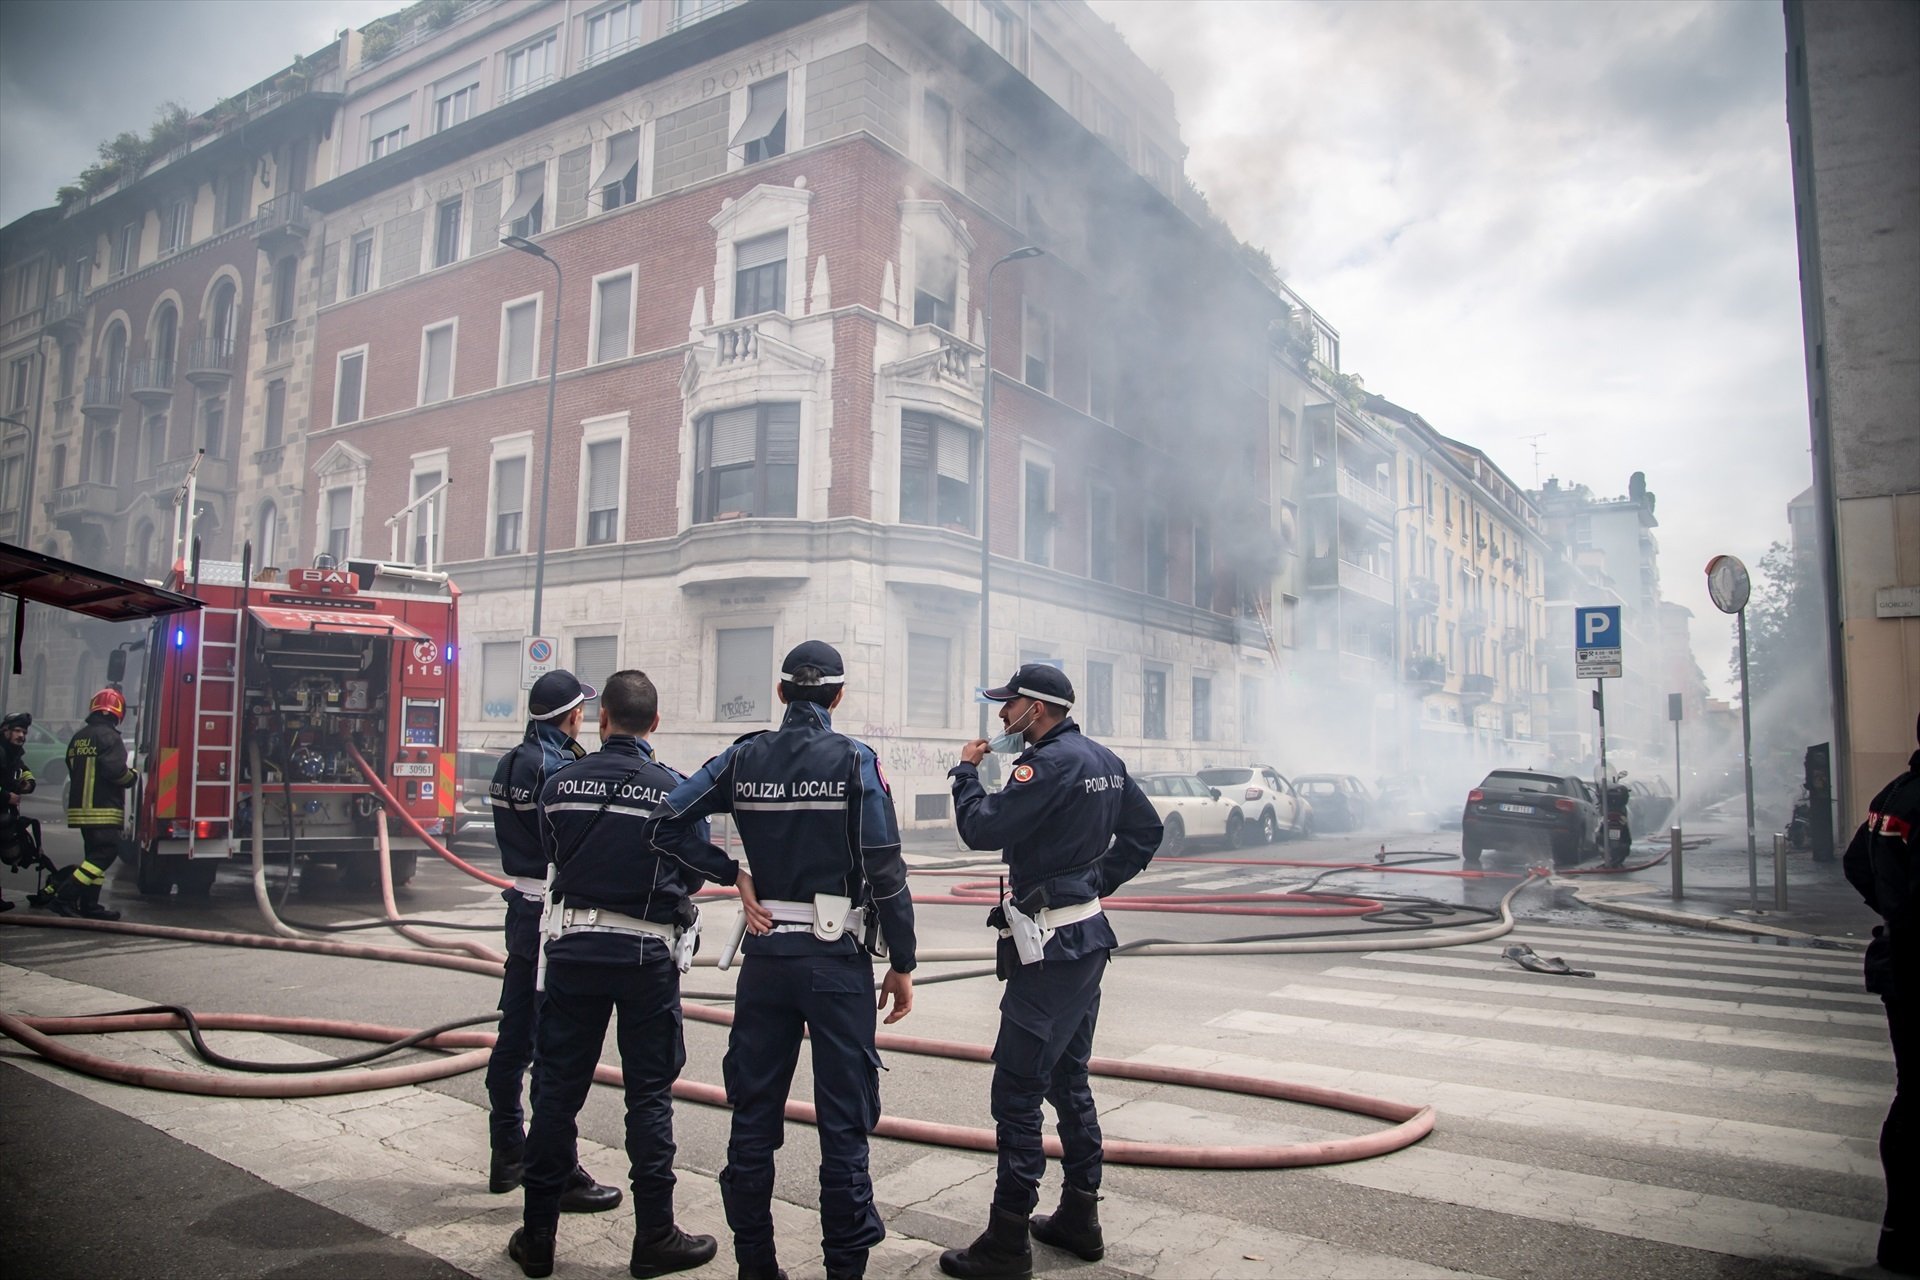 Els bombers poc després d'apagar el foc al centre de Milà / Claudio Furlan - Lapresse via Zuma - Dpa